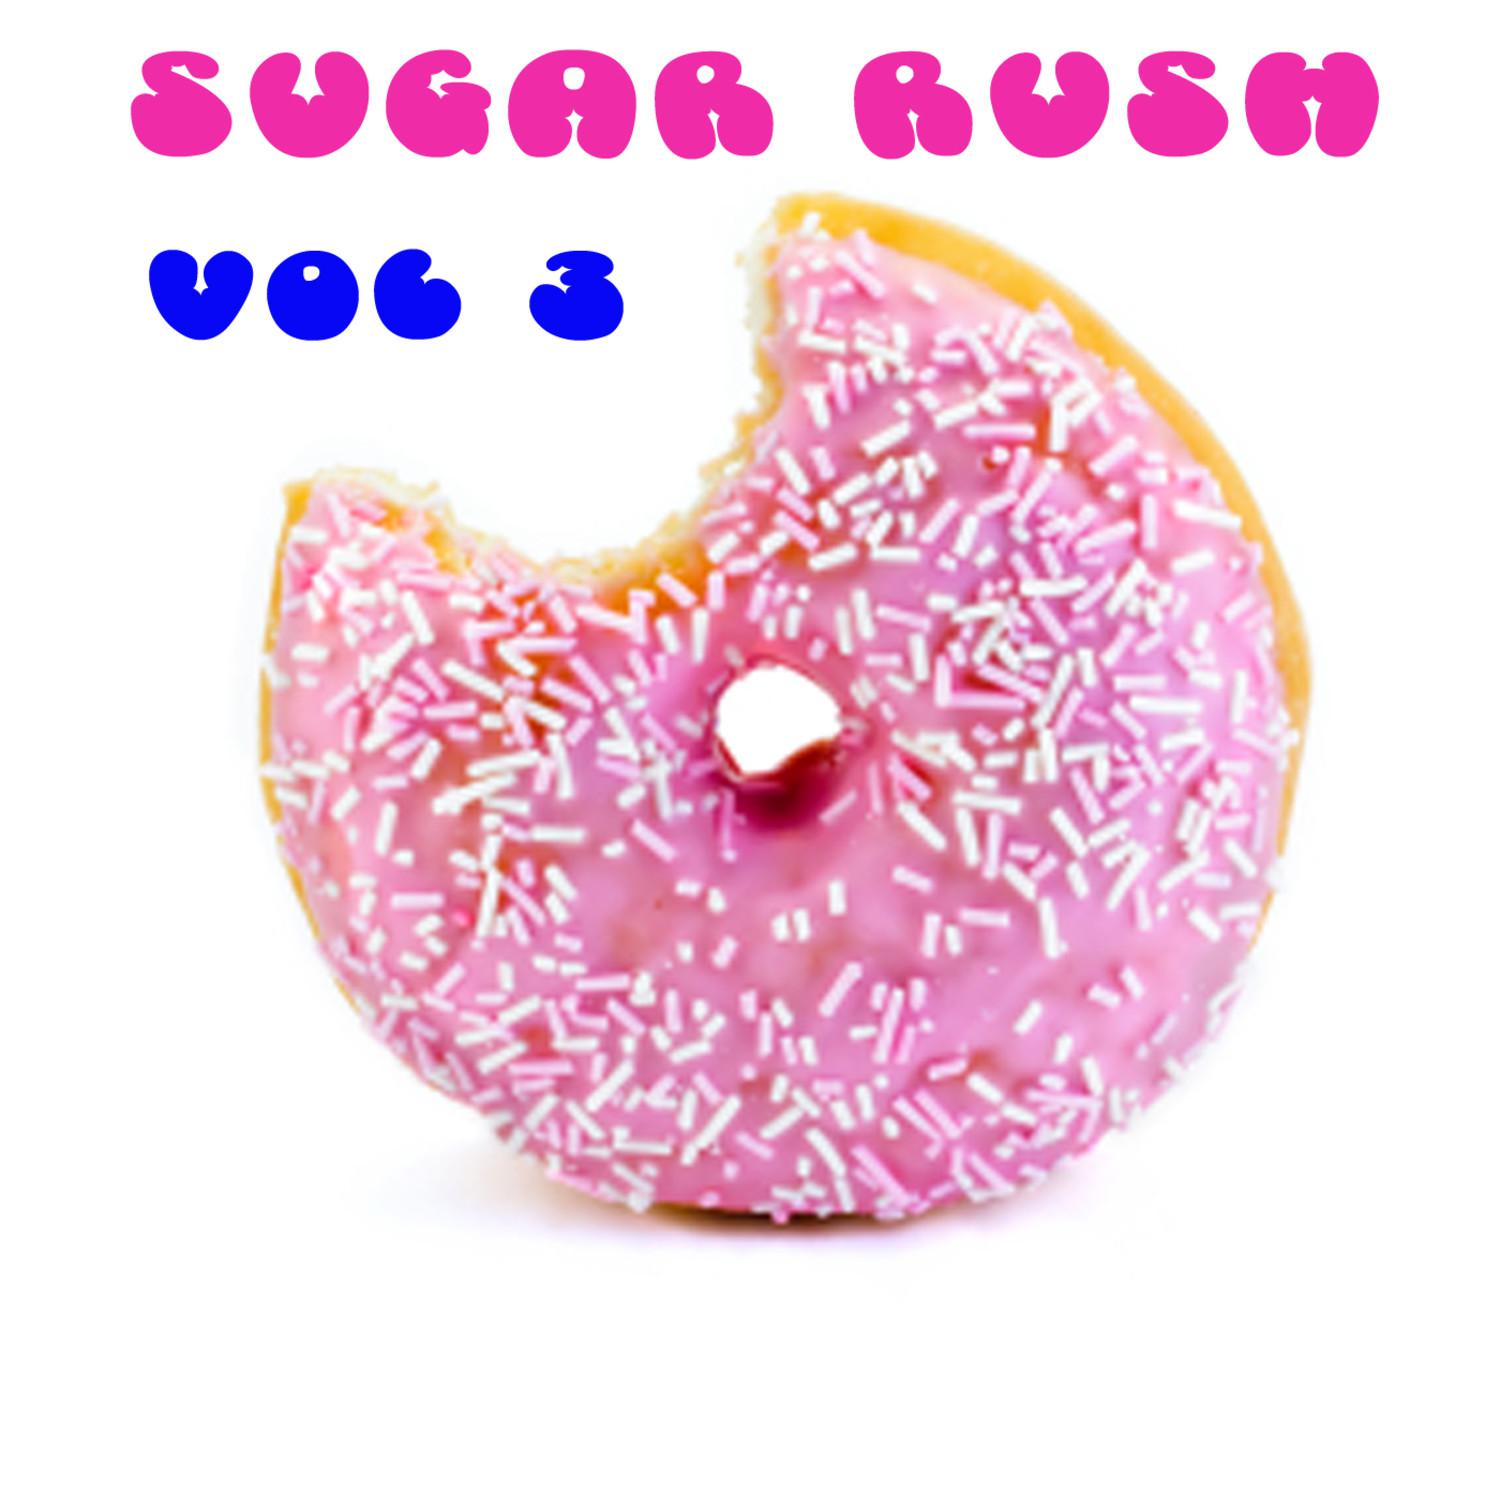 Sugar Rush Vol. 3